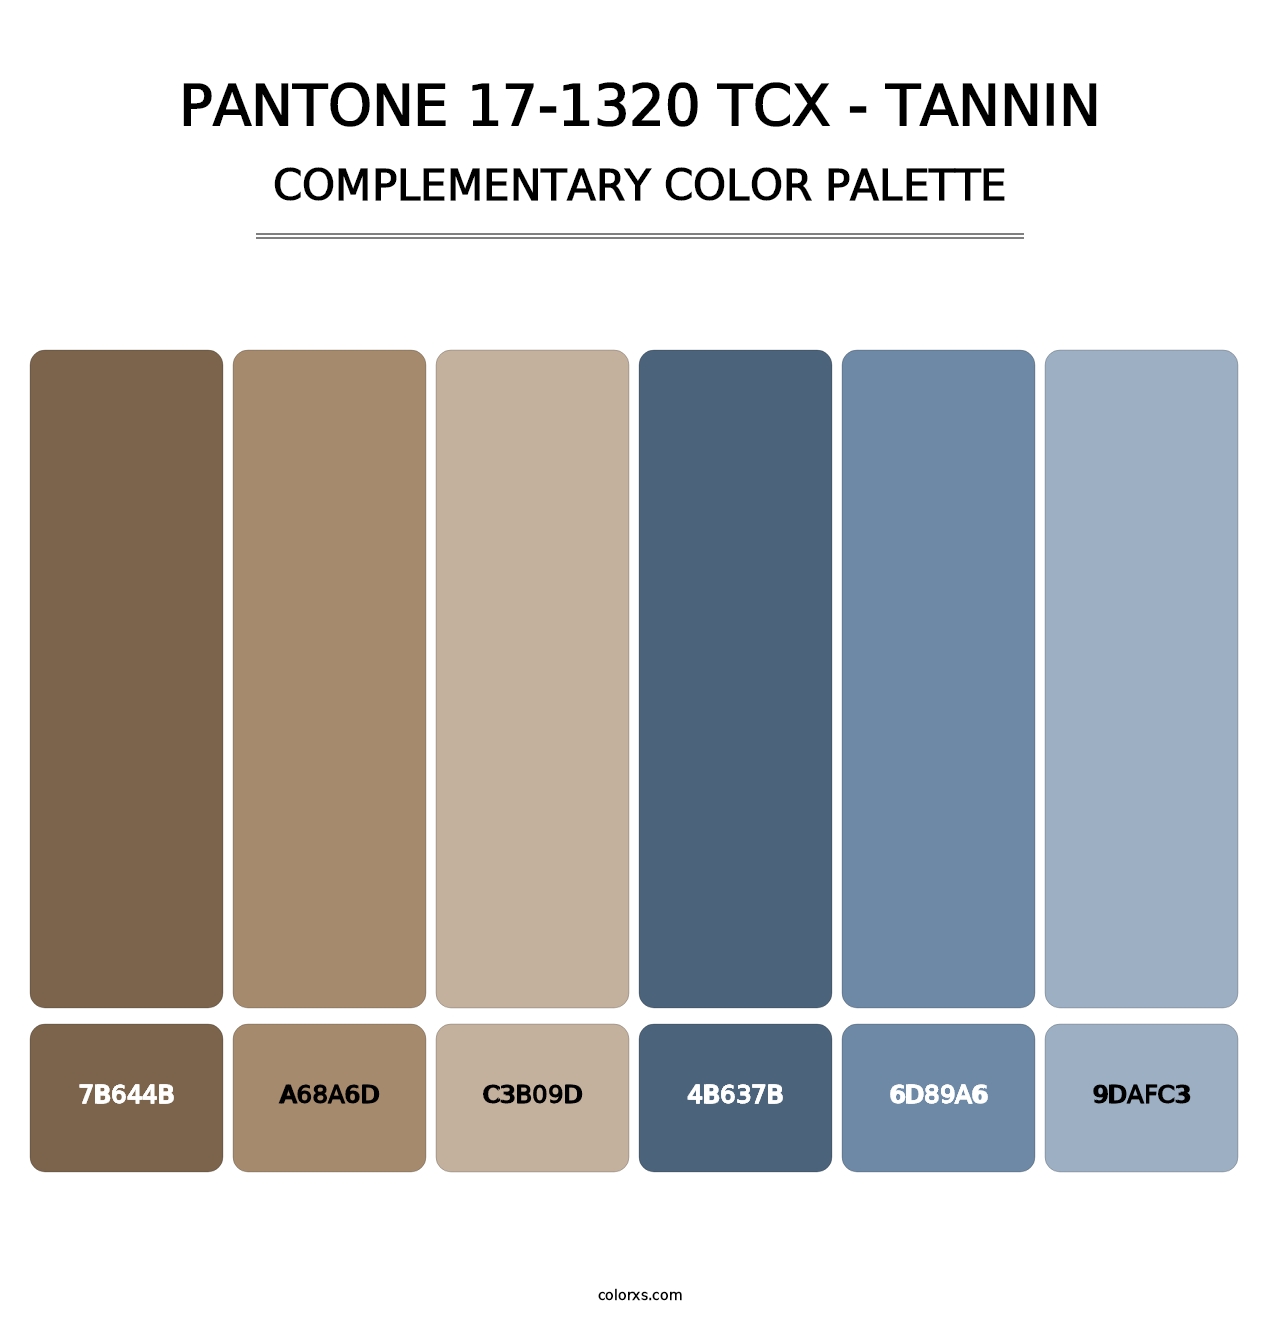 PANTONE 17-1320 TCX - Tannin - Complementary Color Palette